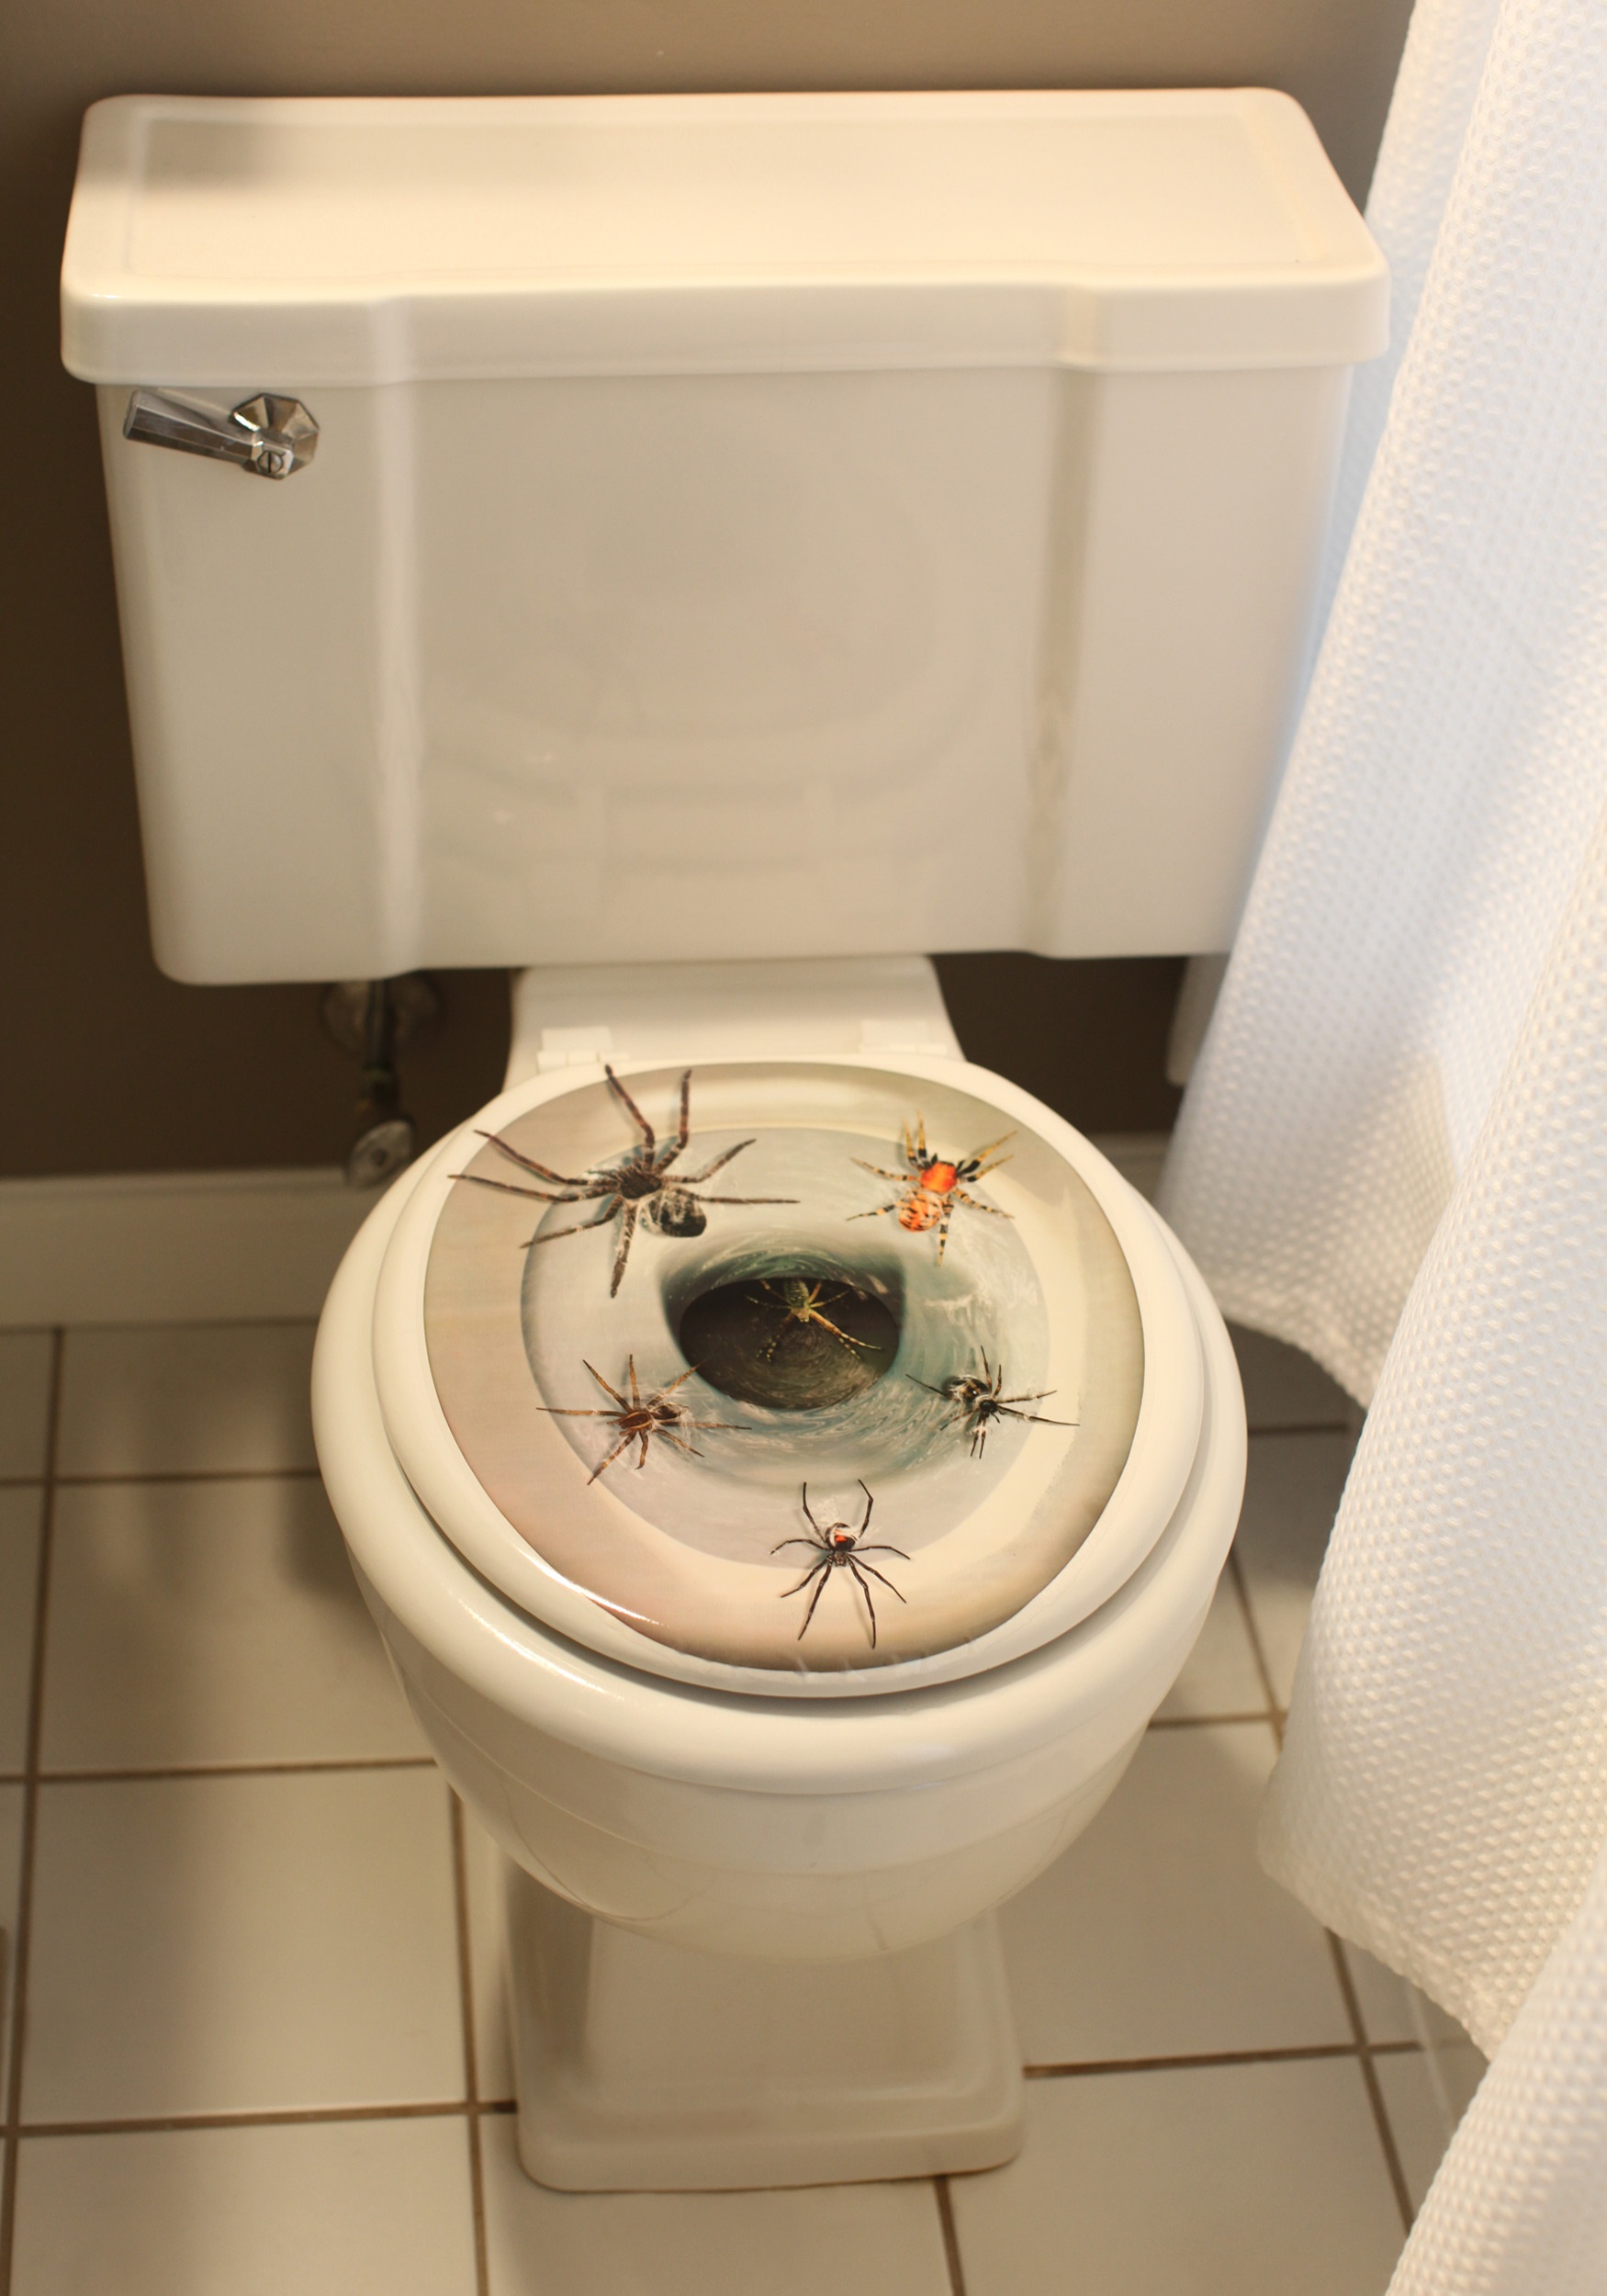 Спайдер туалет. Большой паук в унитазе.